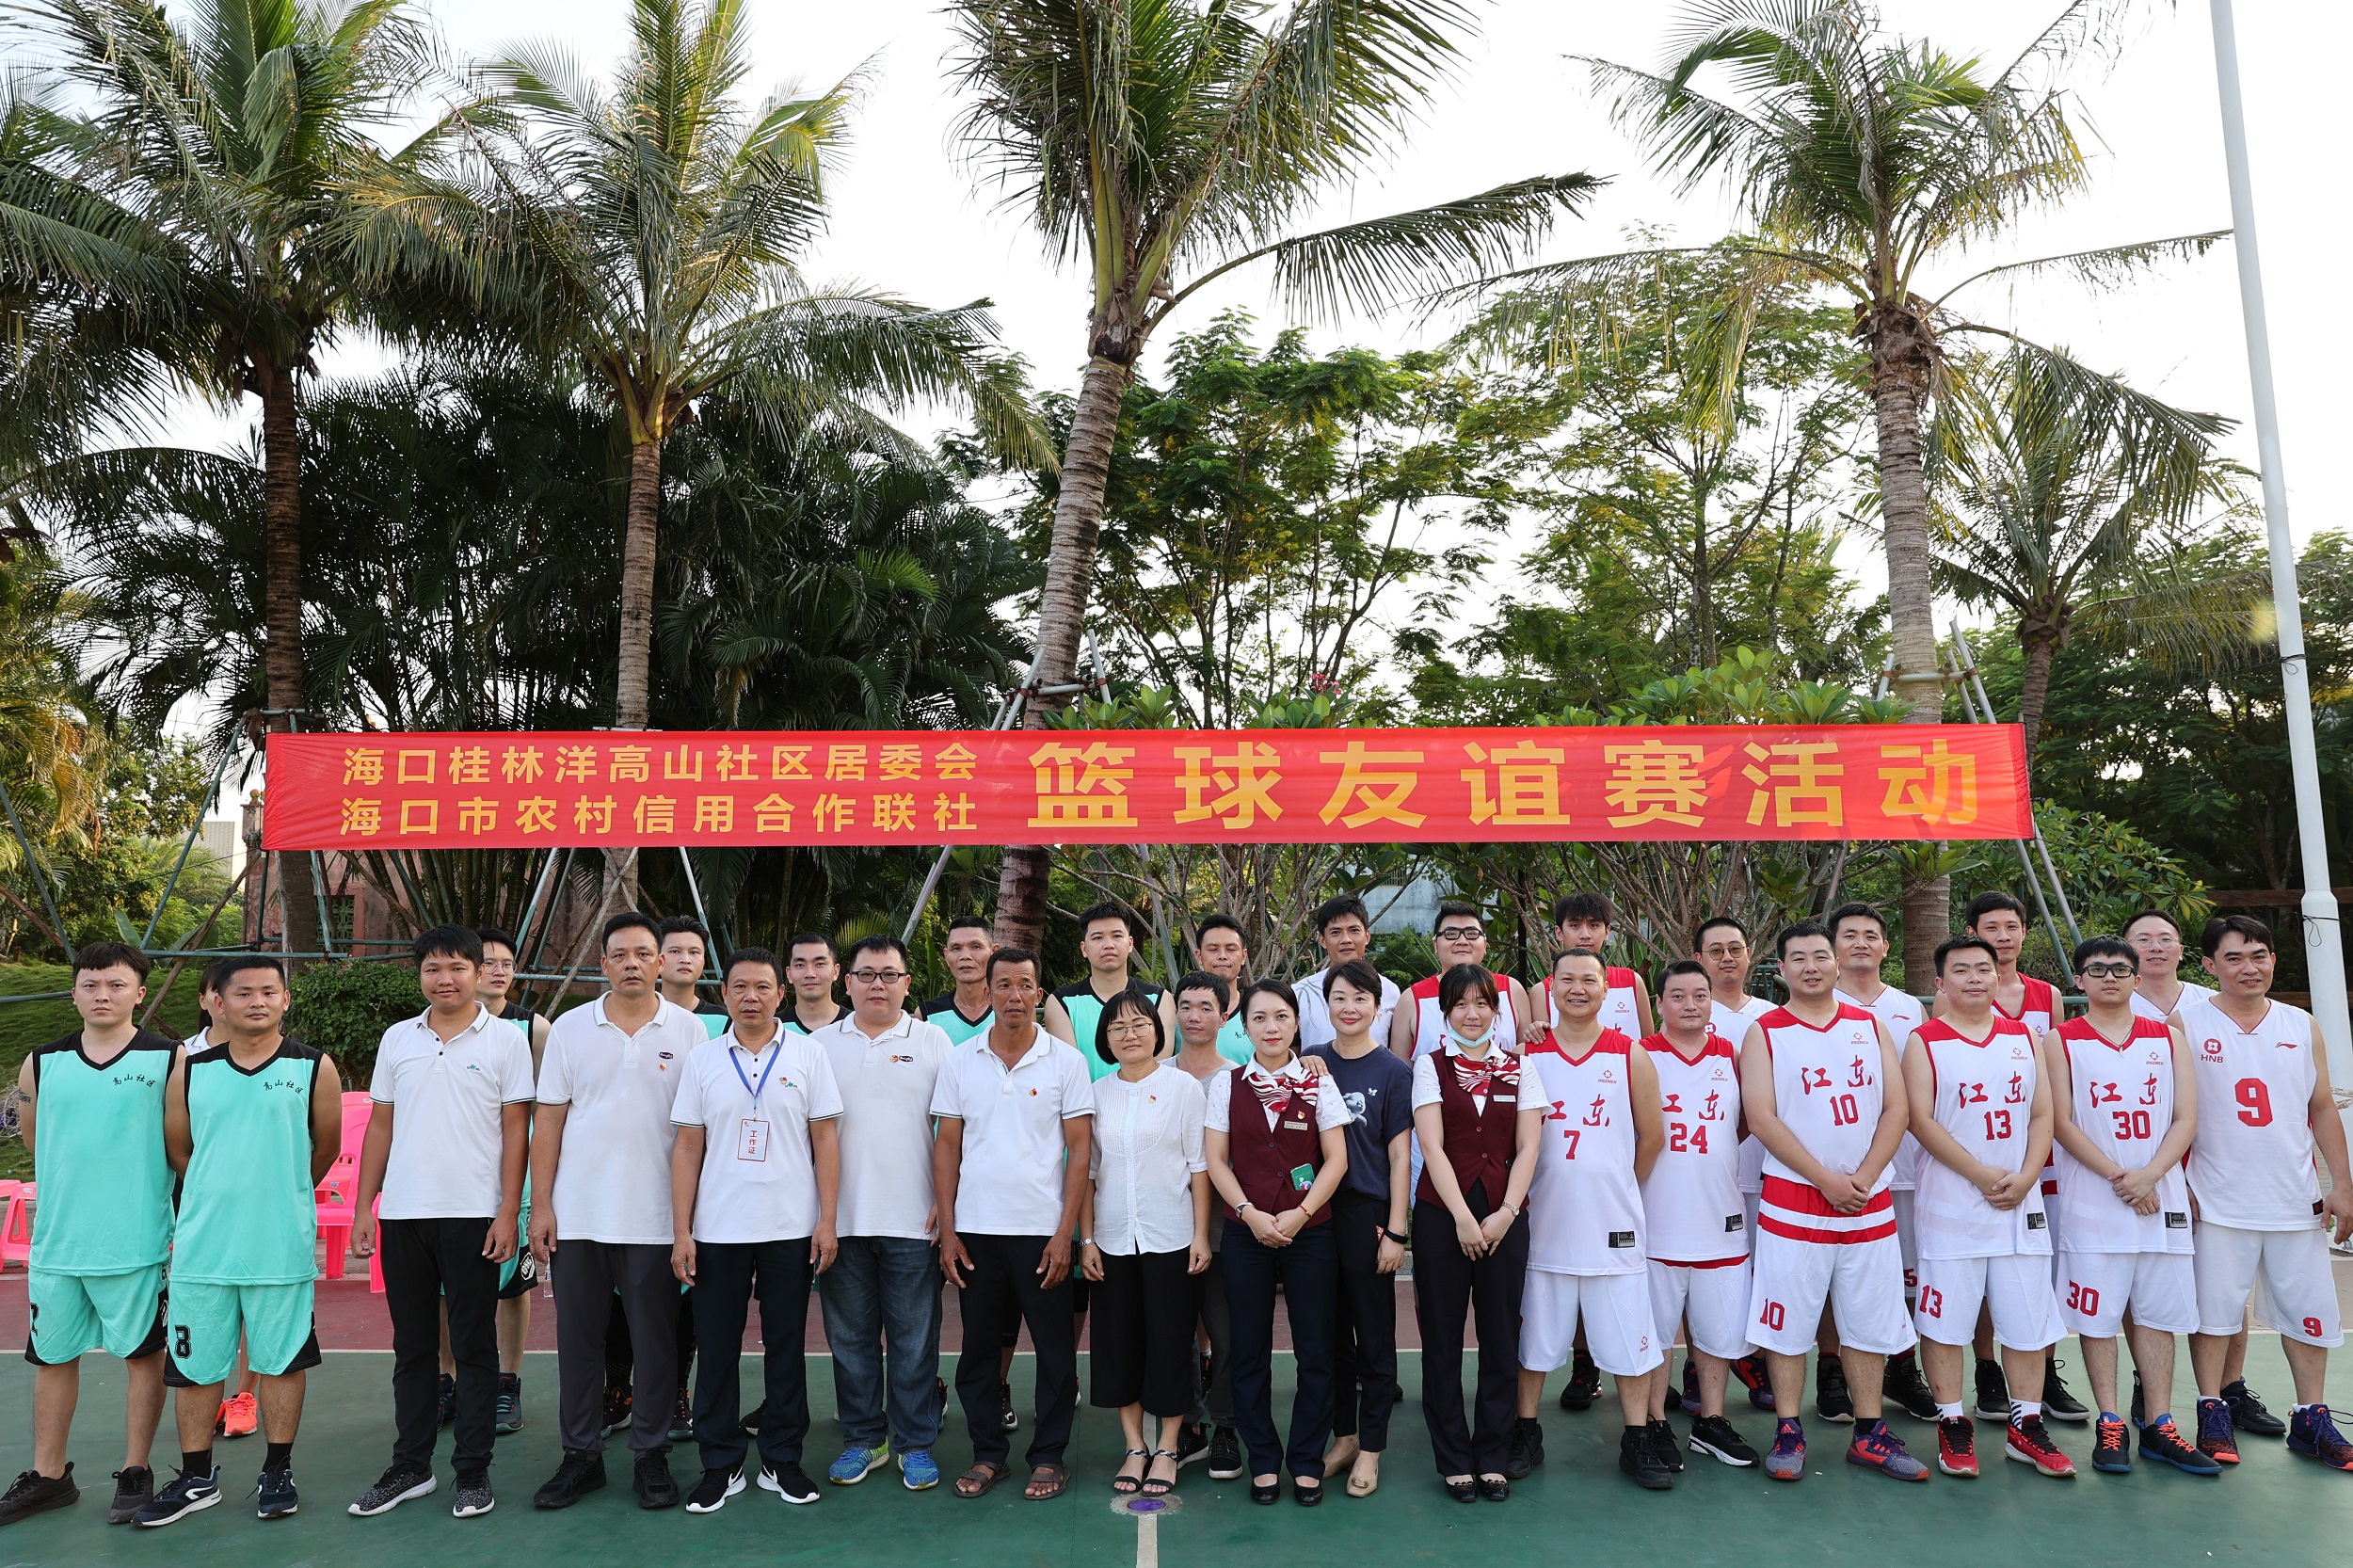 海口联社工会开展喜迎国庆友谊篮球赛活动